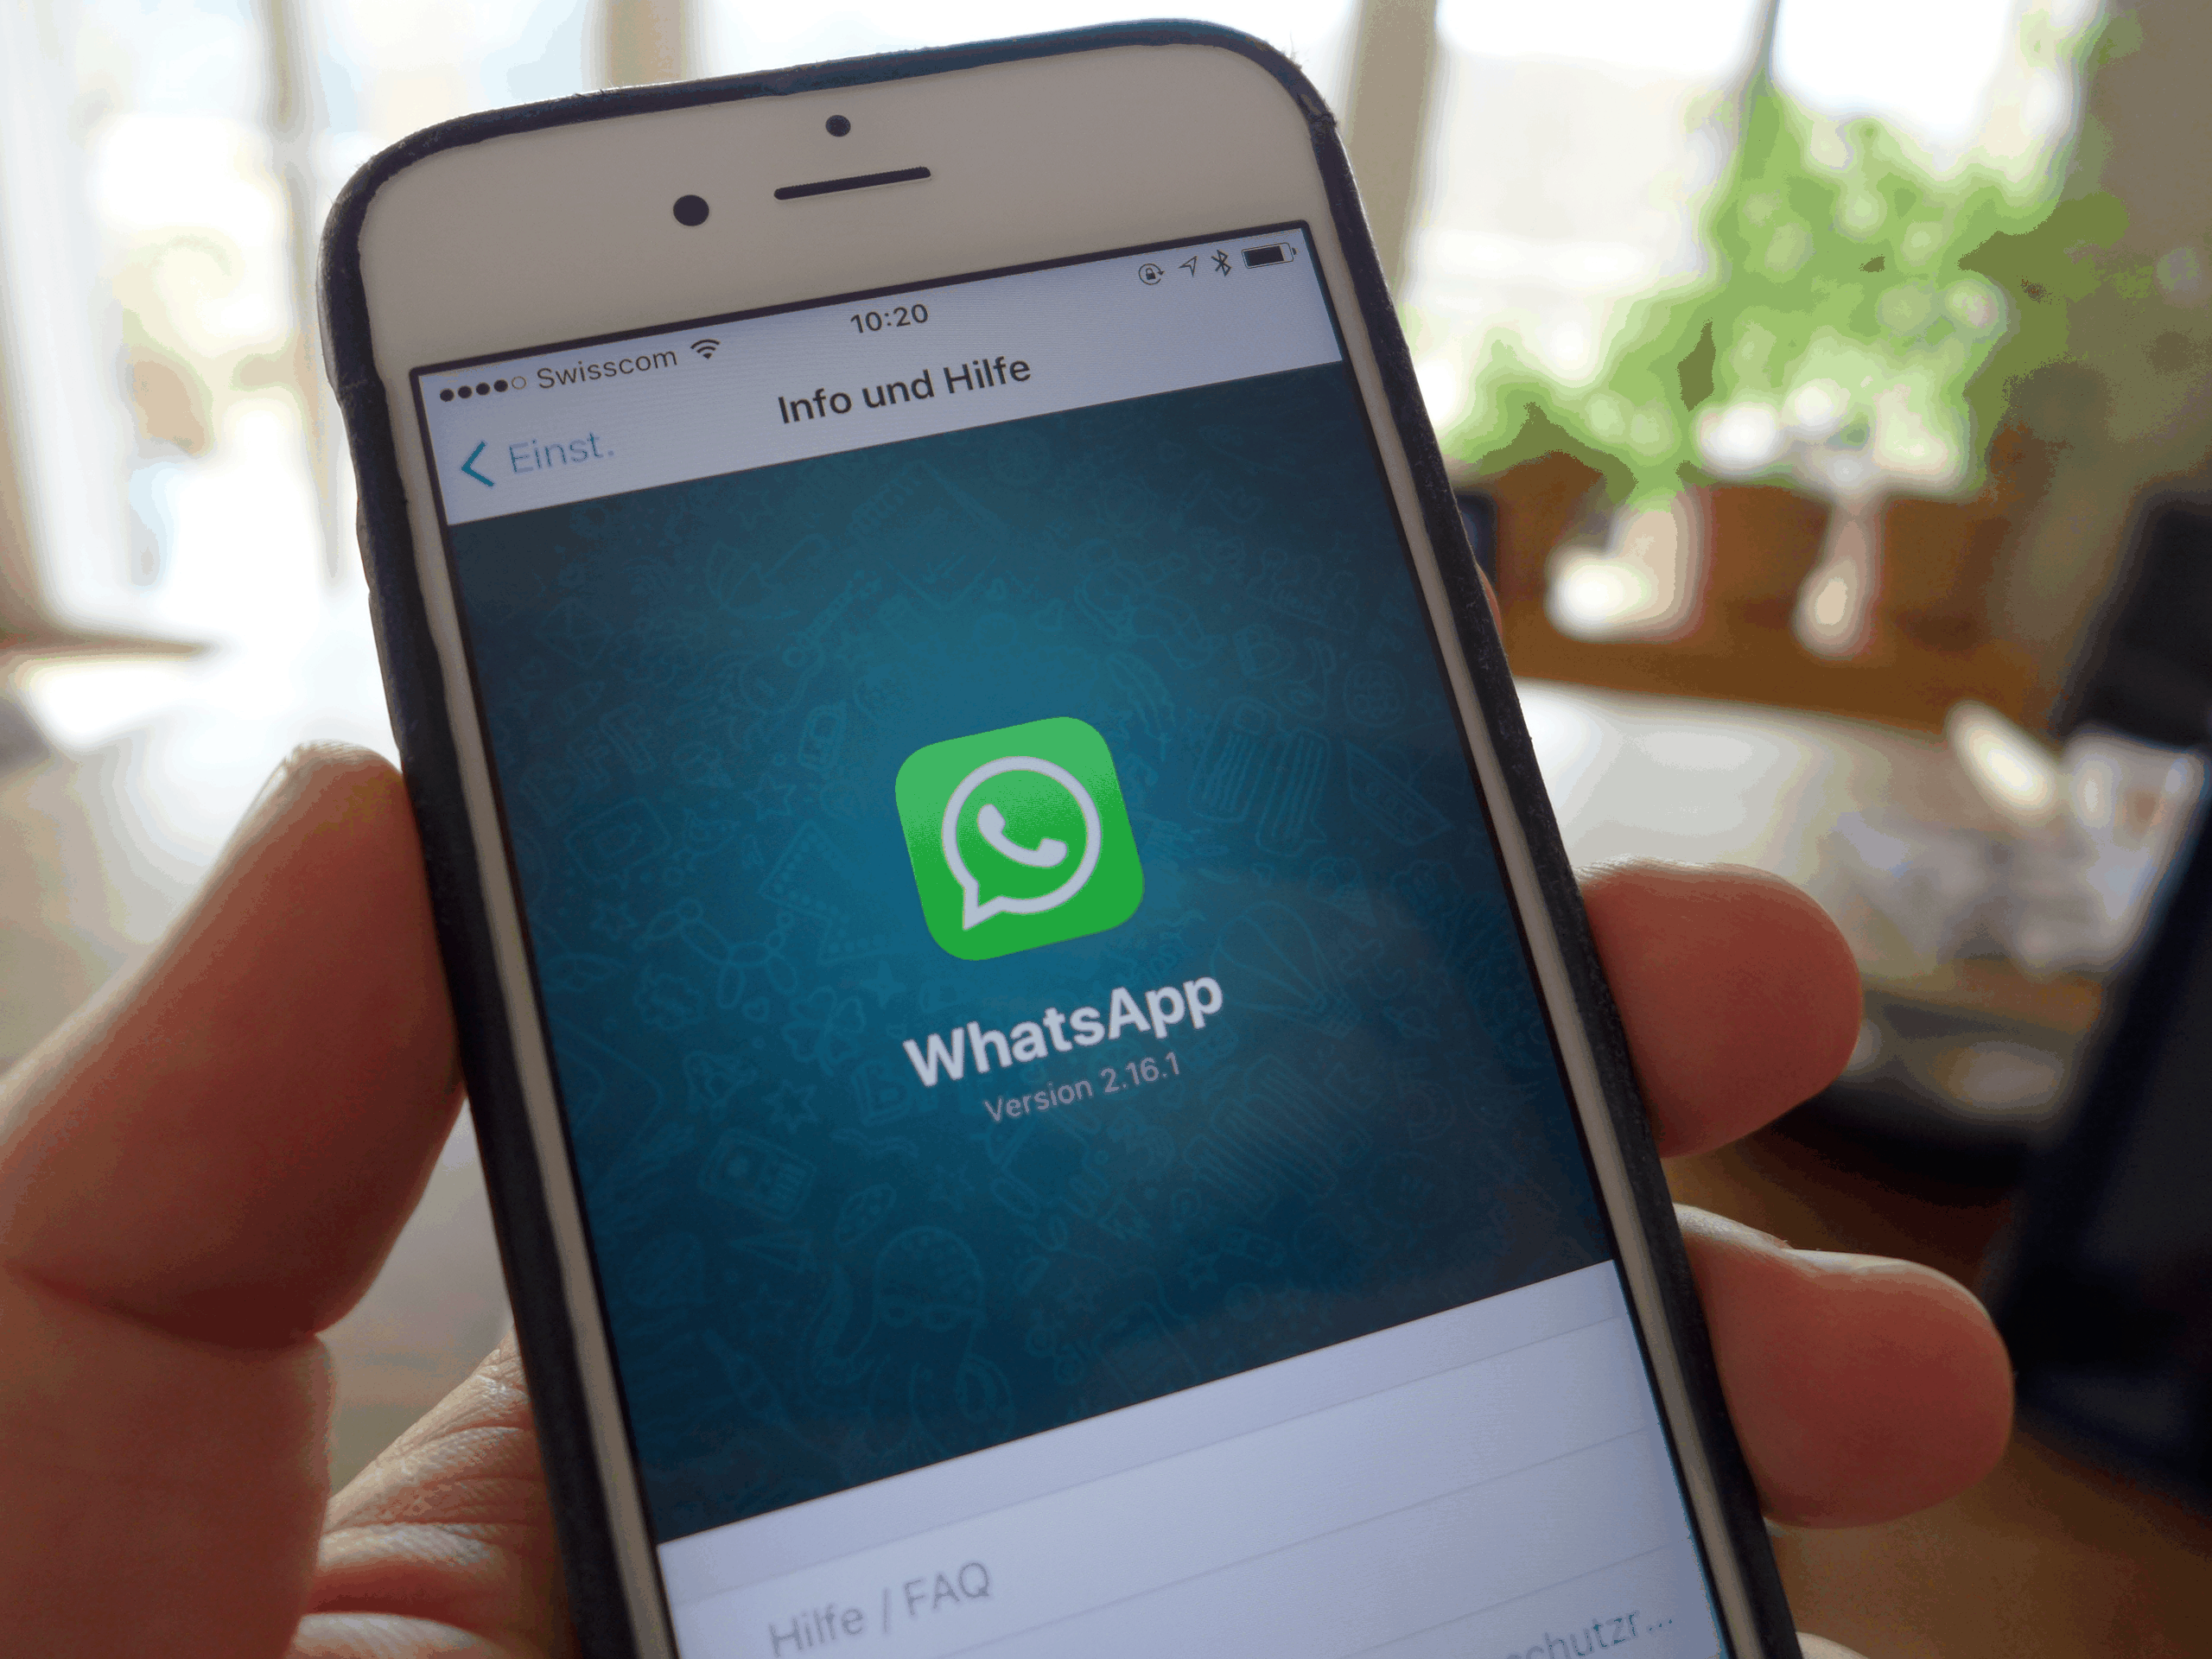 Endlich führt WhatsApp eine zuverlässige Verschlüsselung ein. Es gibt jedoch Bedenken.